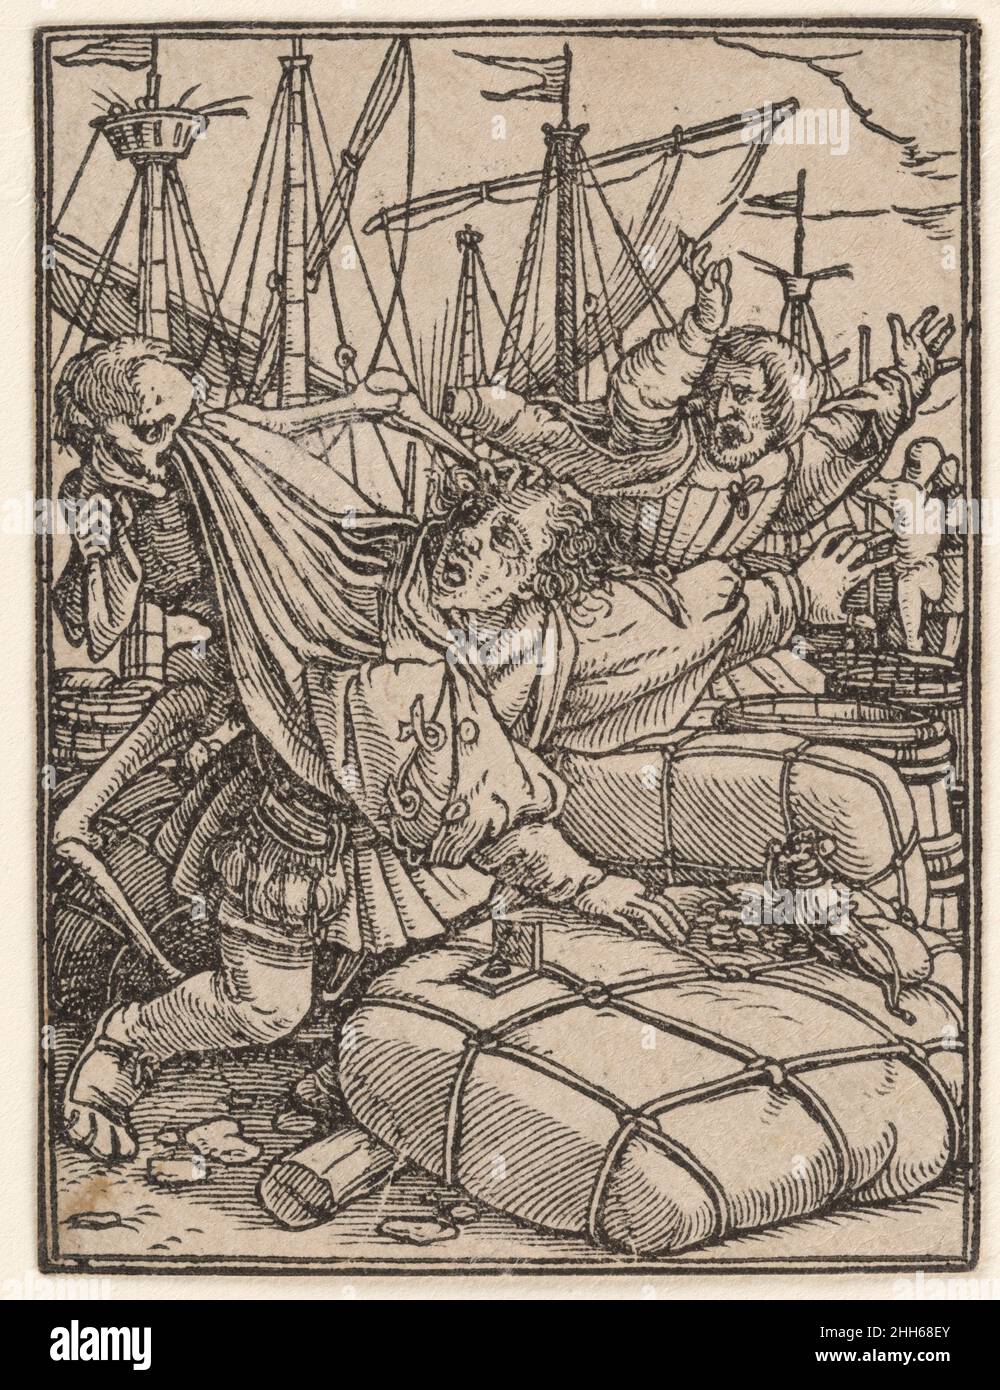 Der Kaufmann, aus dem Tanz des Todes ca. 1526, erschienen 1538 gestaltet von Hans Holbein dem Jüngeren. Der Kaufmann, aus dem Tanz des Todes. Gestaltet von Hans Holbein dem Jüngeren (deutsch, Augsburg 1497/98–1543 London). 1526, veröffentlicht 1538. Holzschnitt. Ausdrucke Stockfoto